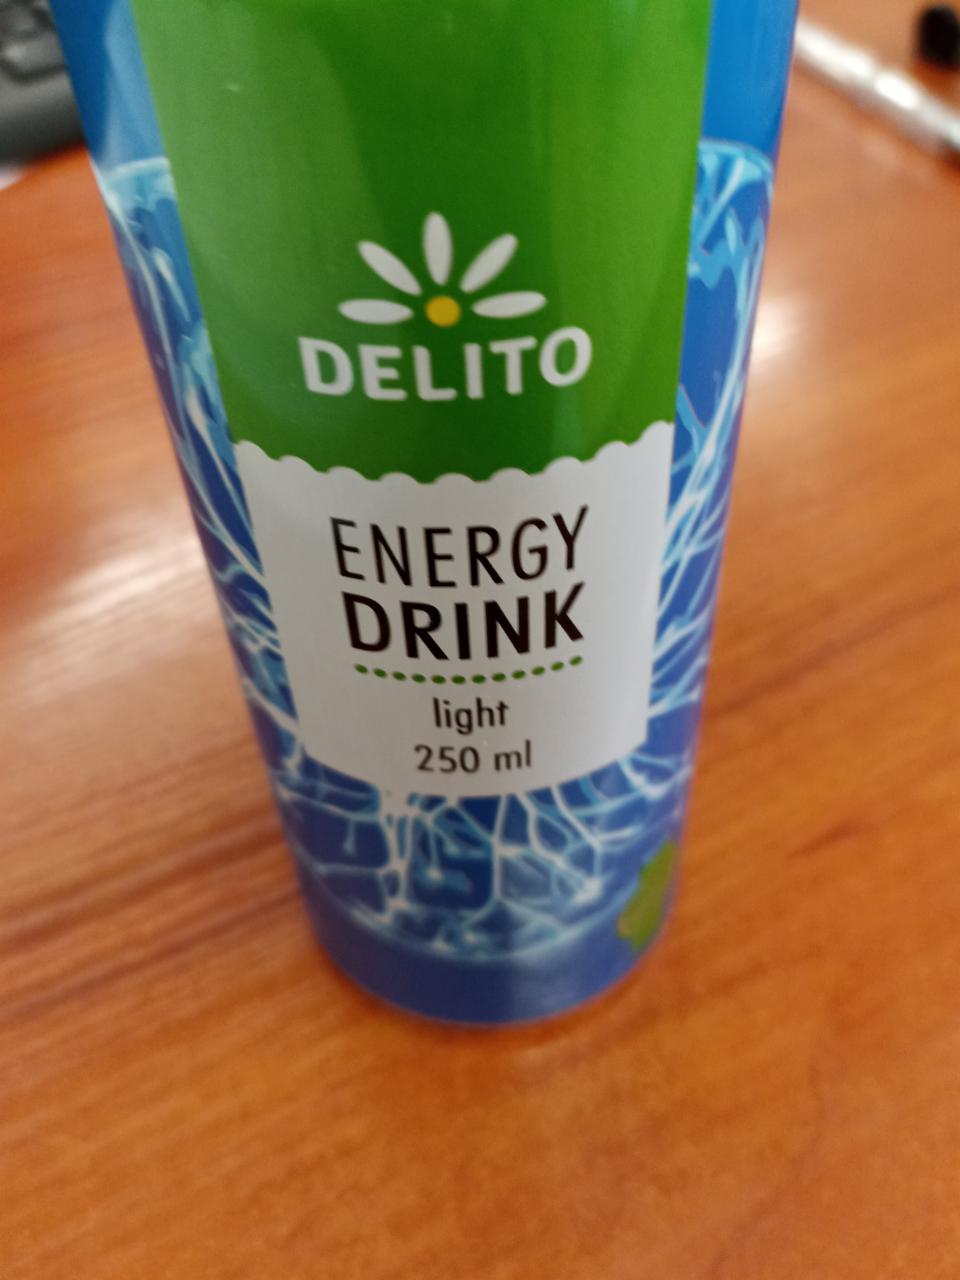 Zdjęcia - energy drink delito